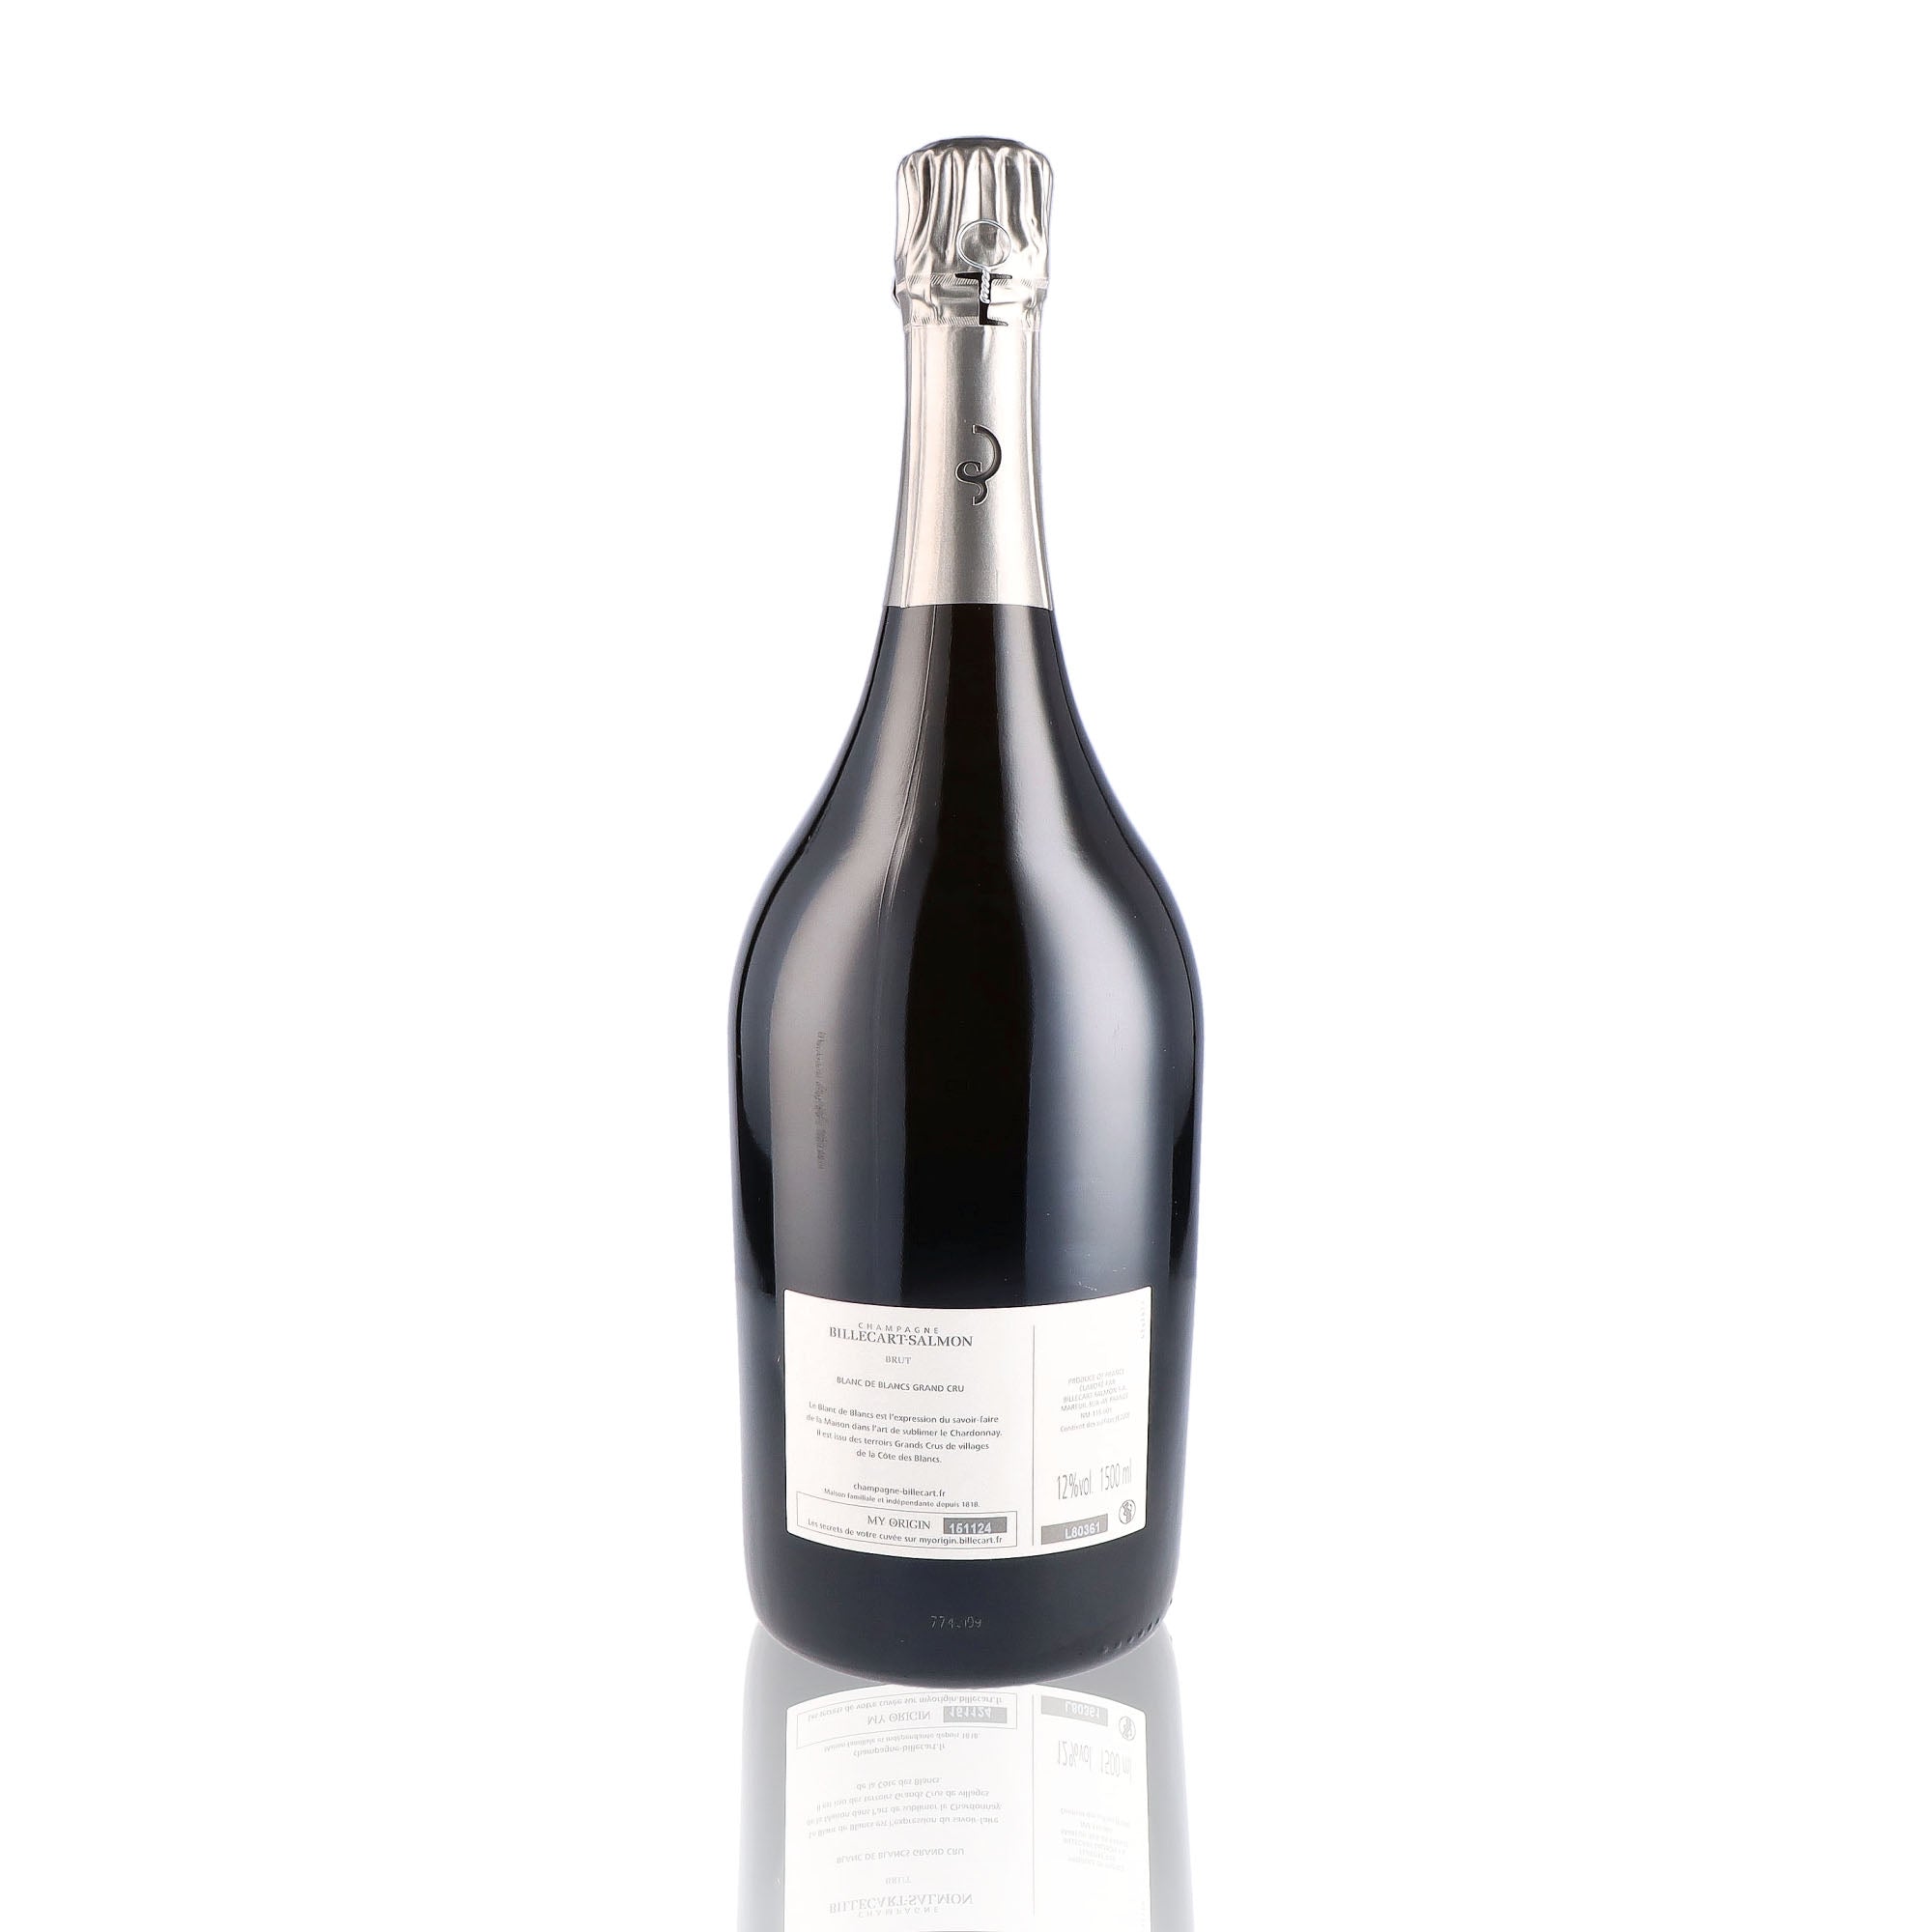 Une bouteille de champagne de la marque Billecart Salmon, de type blanc de blancs, en version magnum.